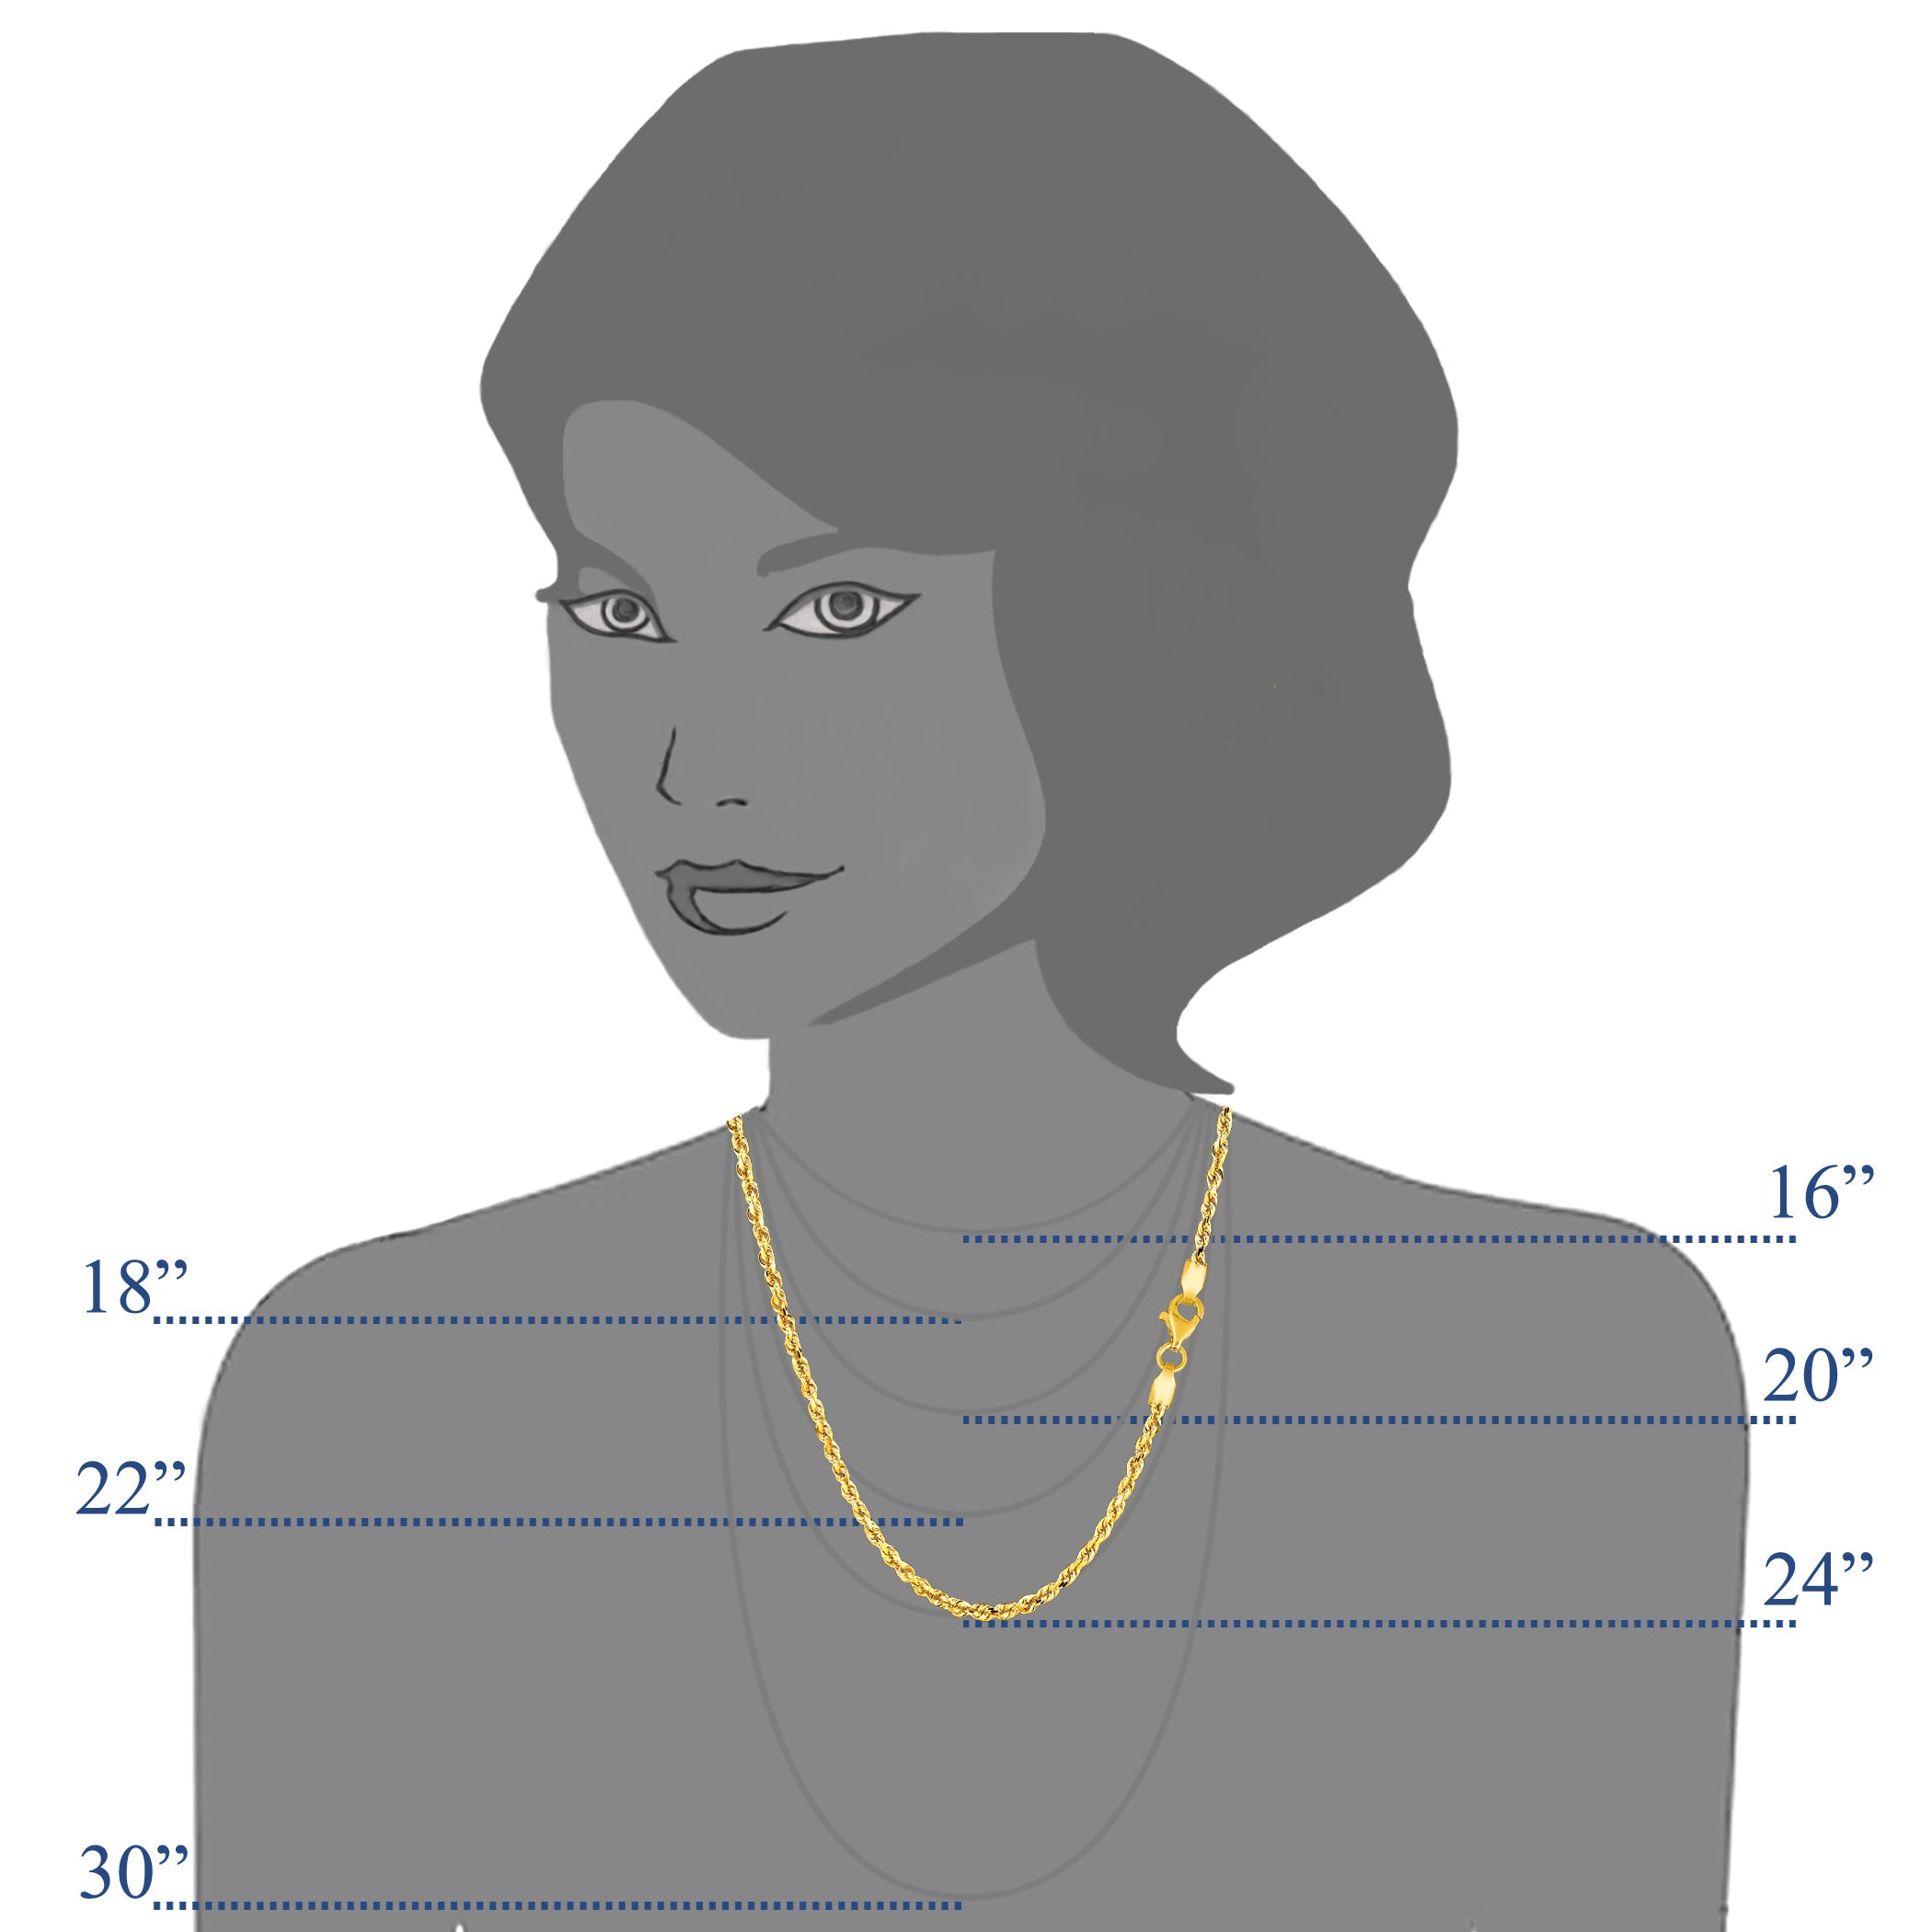 14 k gult massivt guld diamantskuret repkedja halsband, 2,25 mm fina designersmycken för män och kvinnor